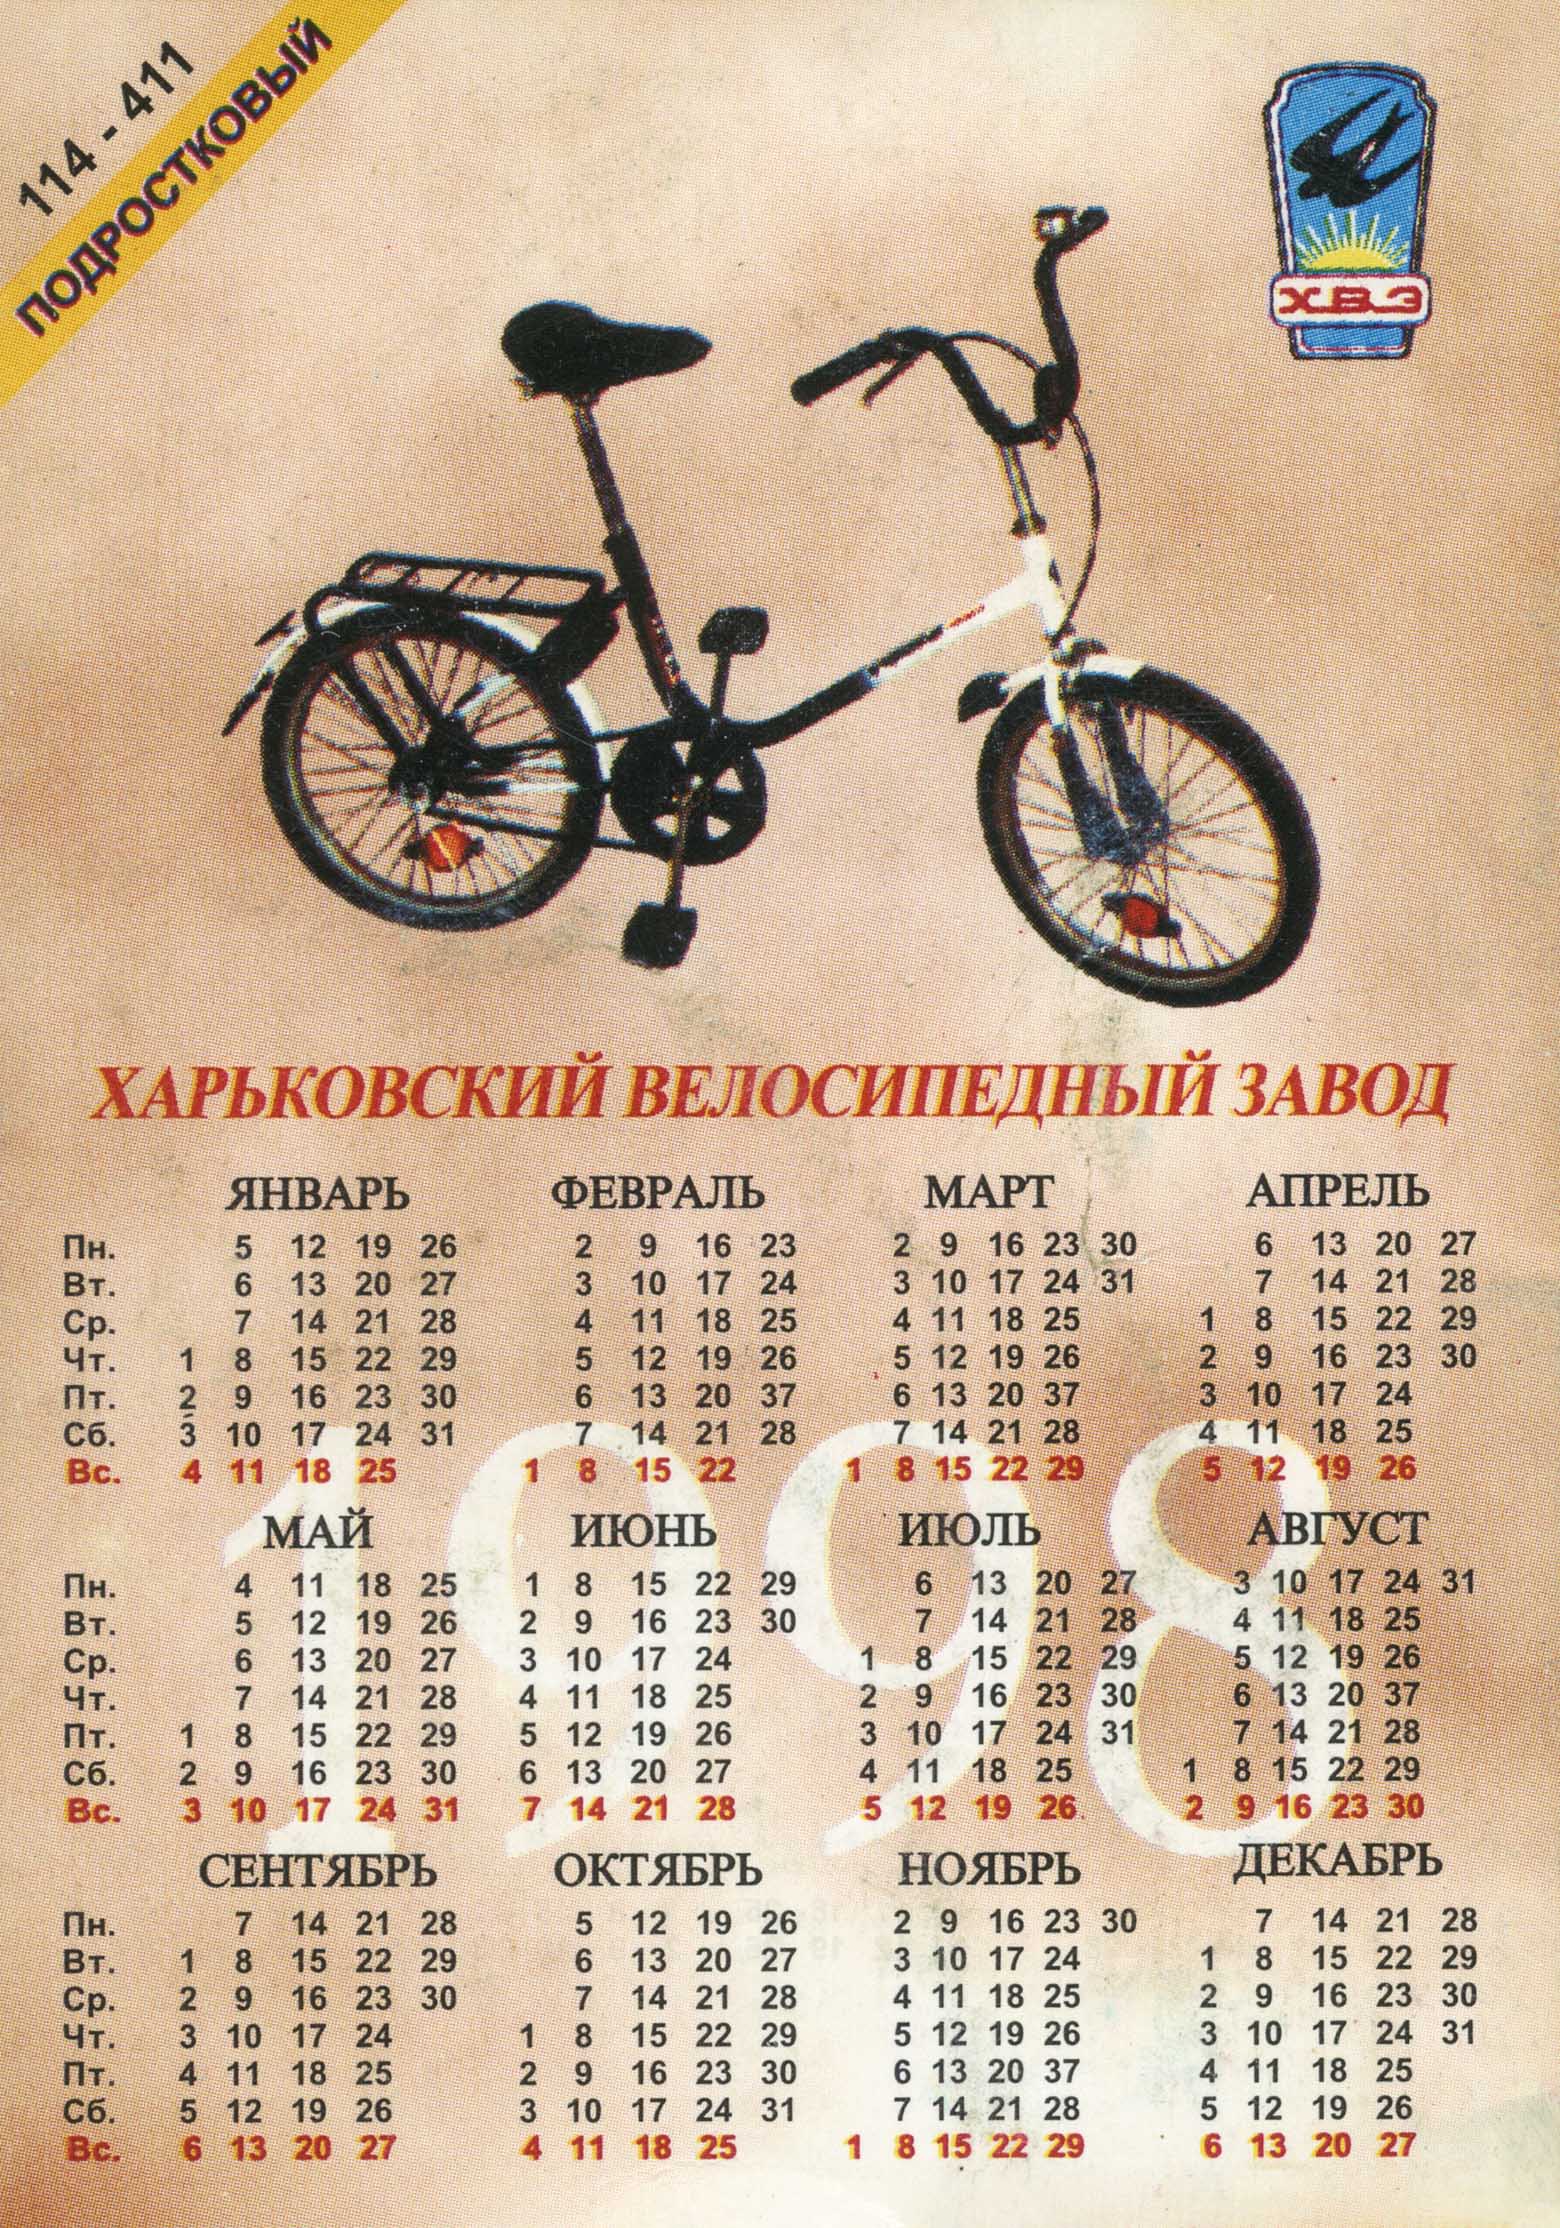 Kharkov calendar 1998/1999 - Podrostkovyy (114-411) & Trekhkolesnyy (192-431) scan 1 main image